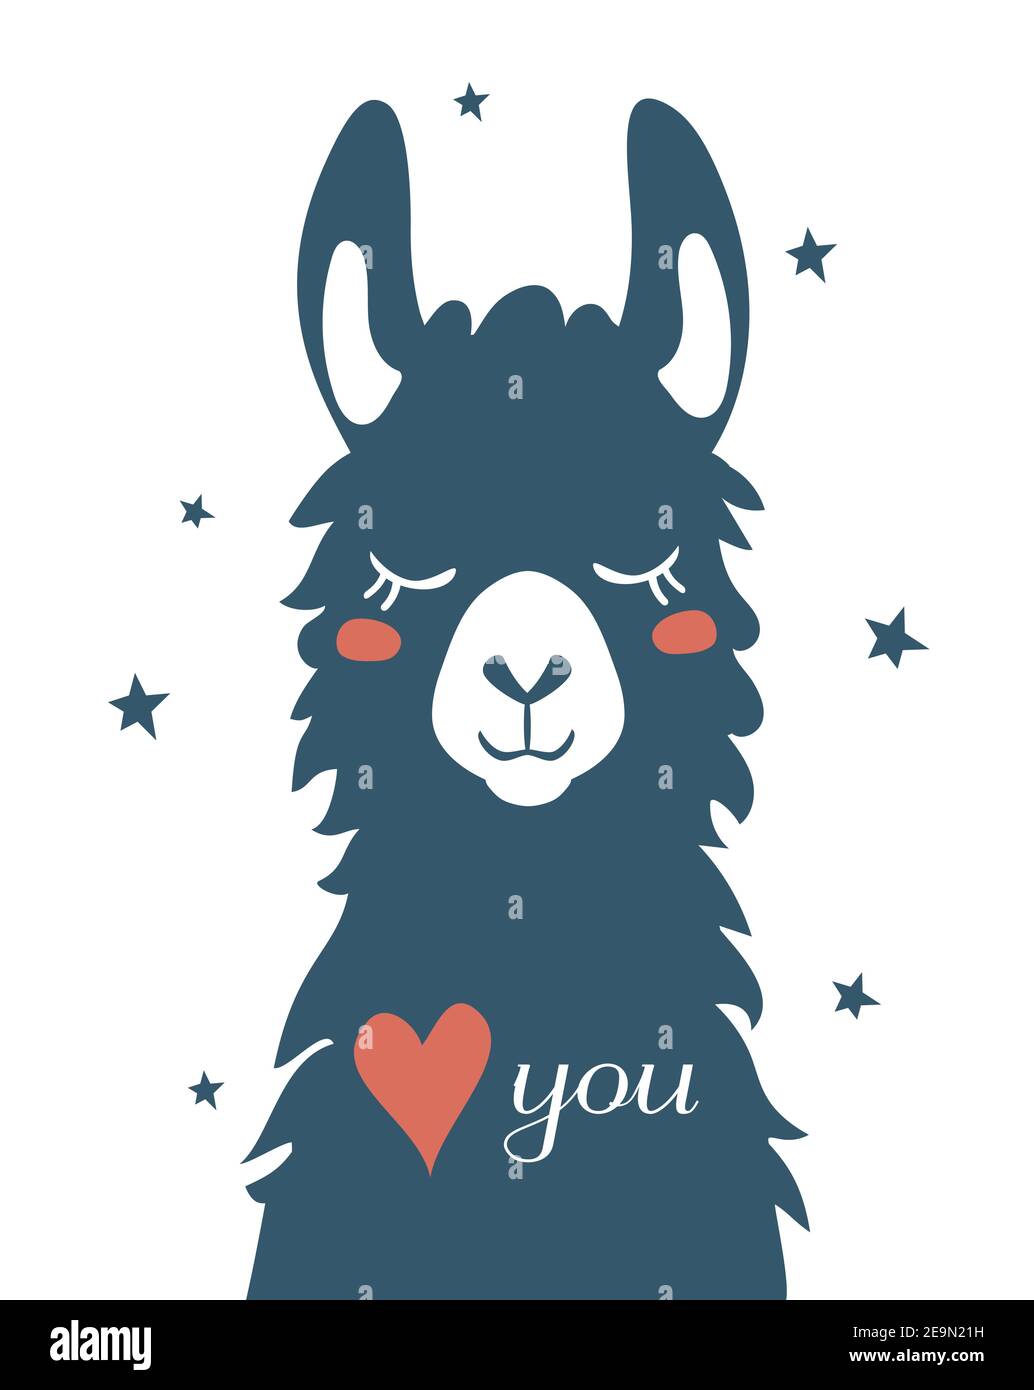 Llama Alpaca, illustration de la carte de Saint-Valentin. Asie de l'est, États-Unis, Résumé, Albino, Animal Illustration de Vecteur